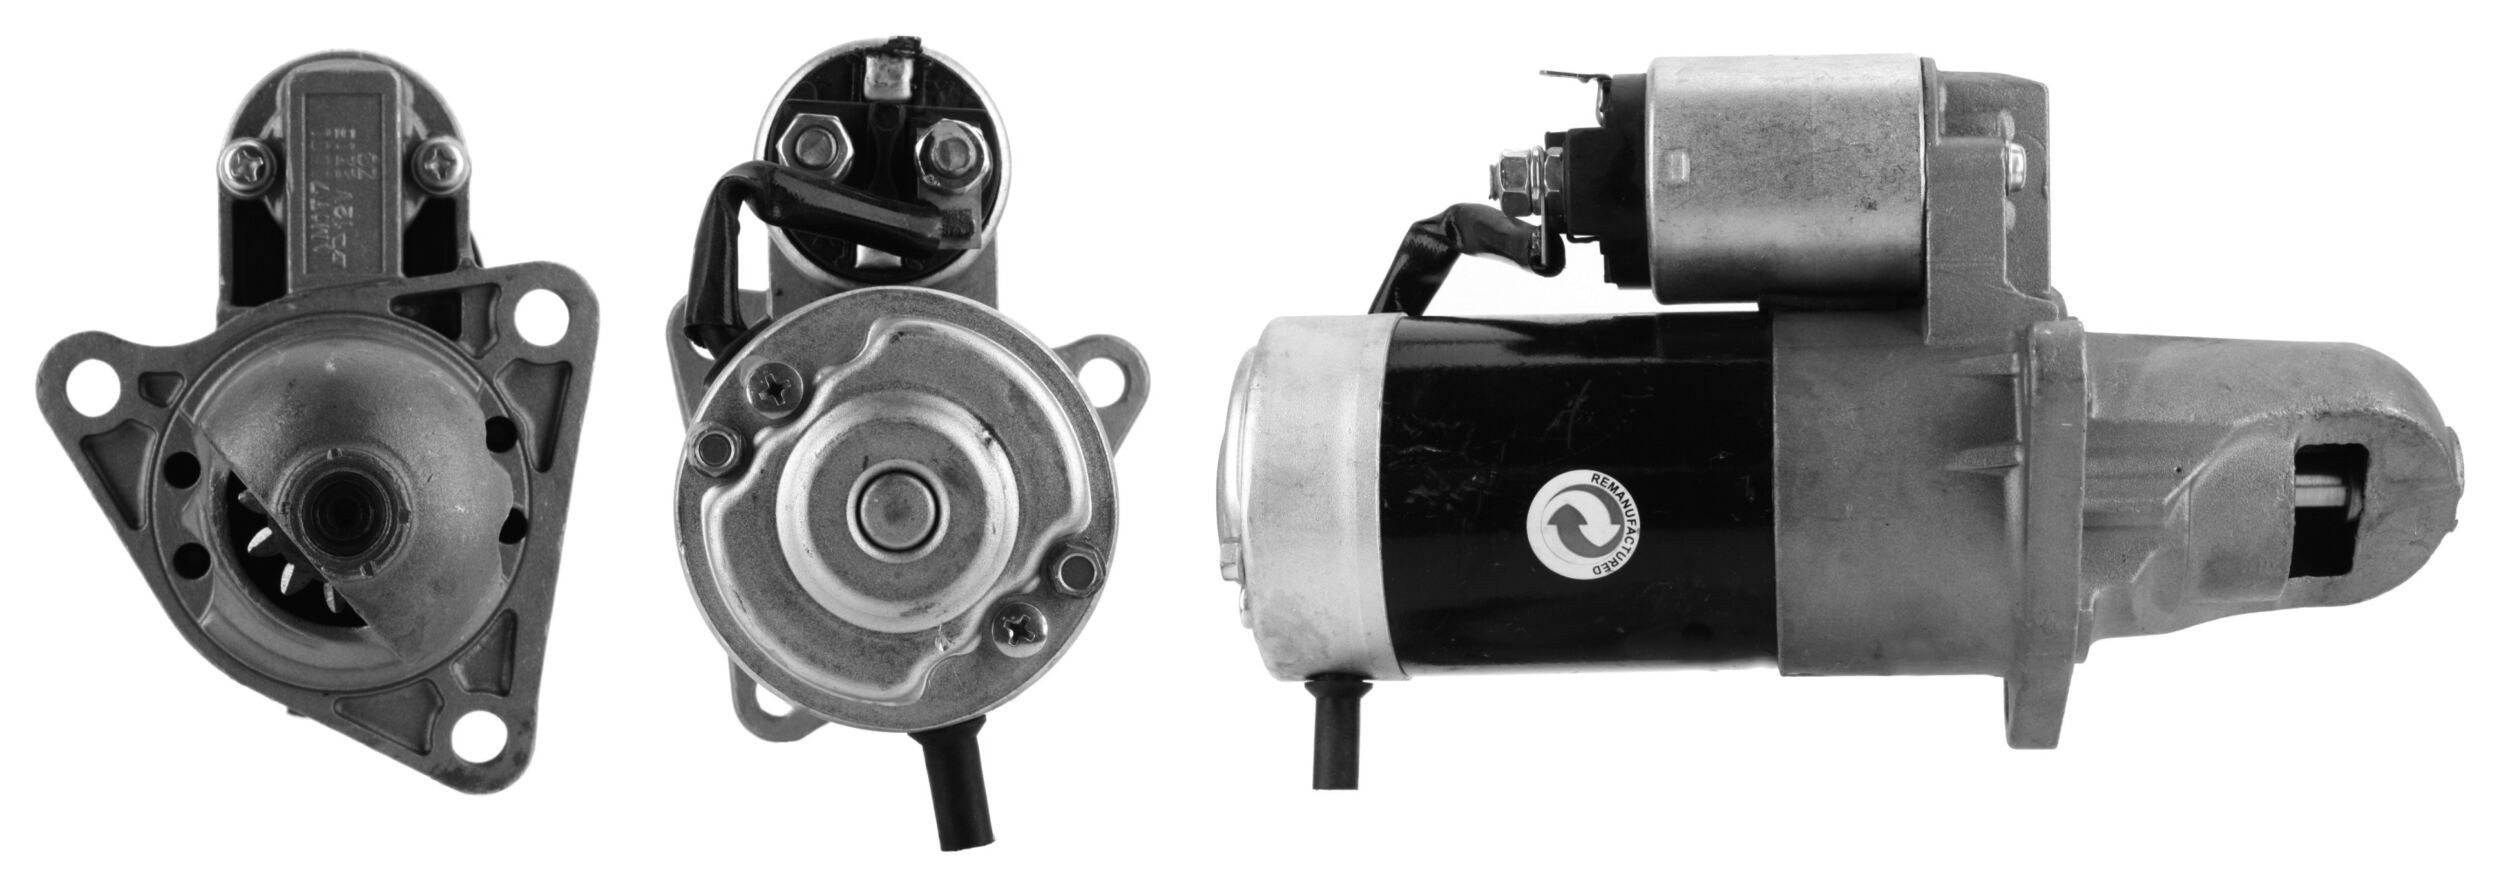 ELSTOCK 25-1314 Starter motor K805-18400